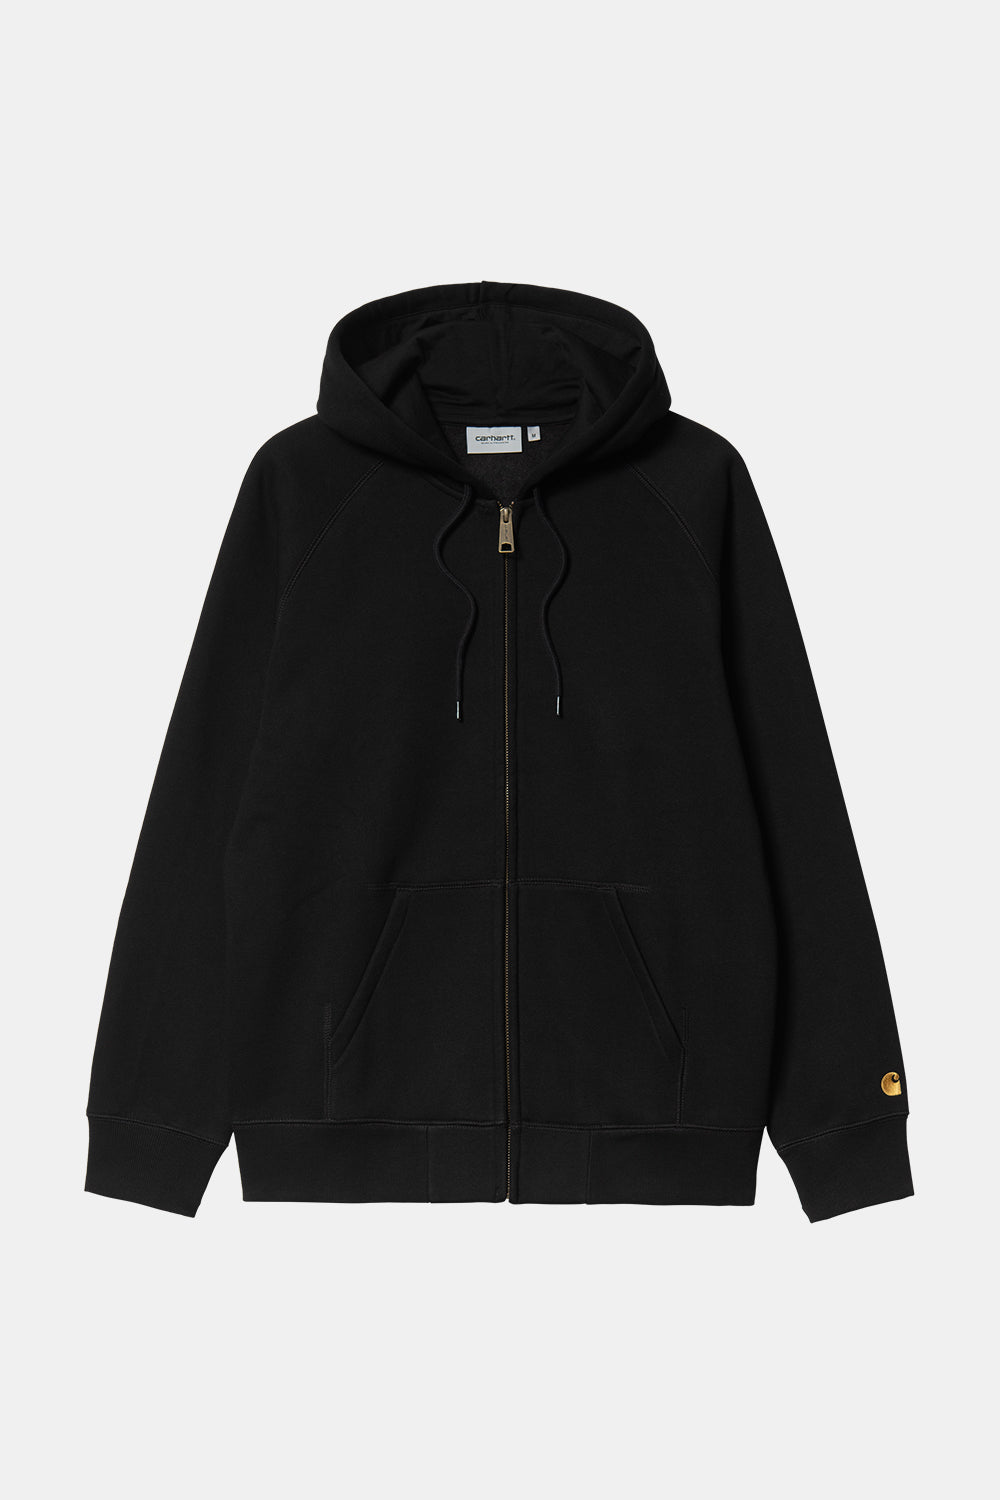 Carhartt WIP Chase-jakke med hætte (sort/guld)